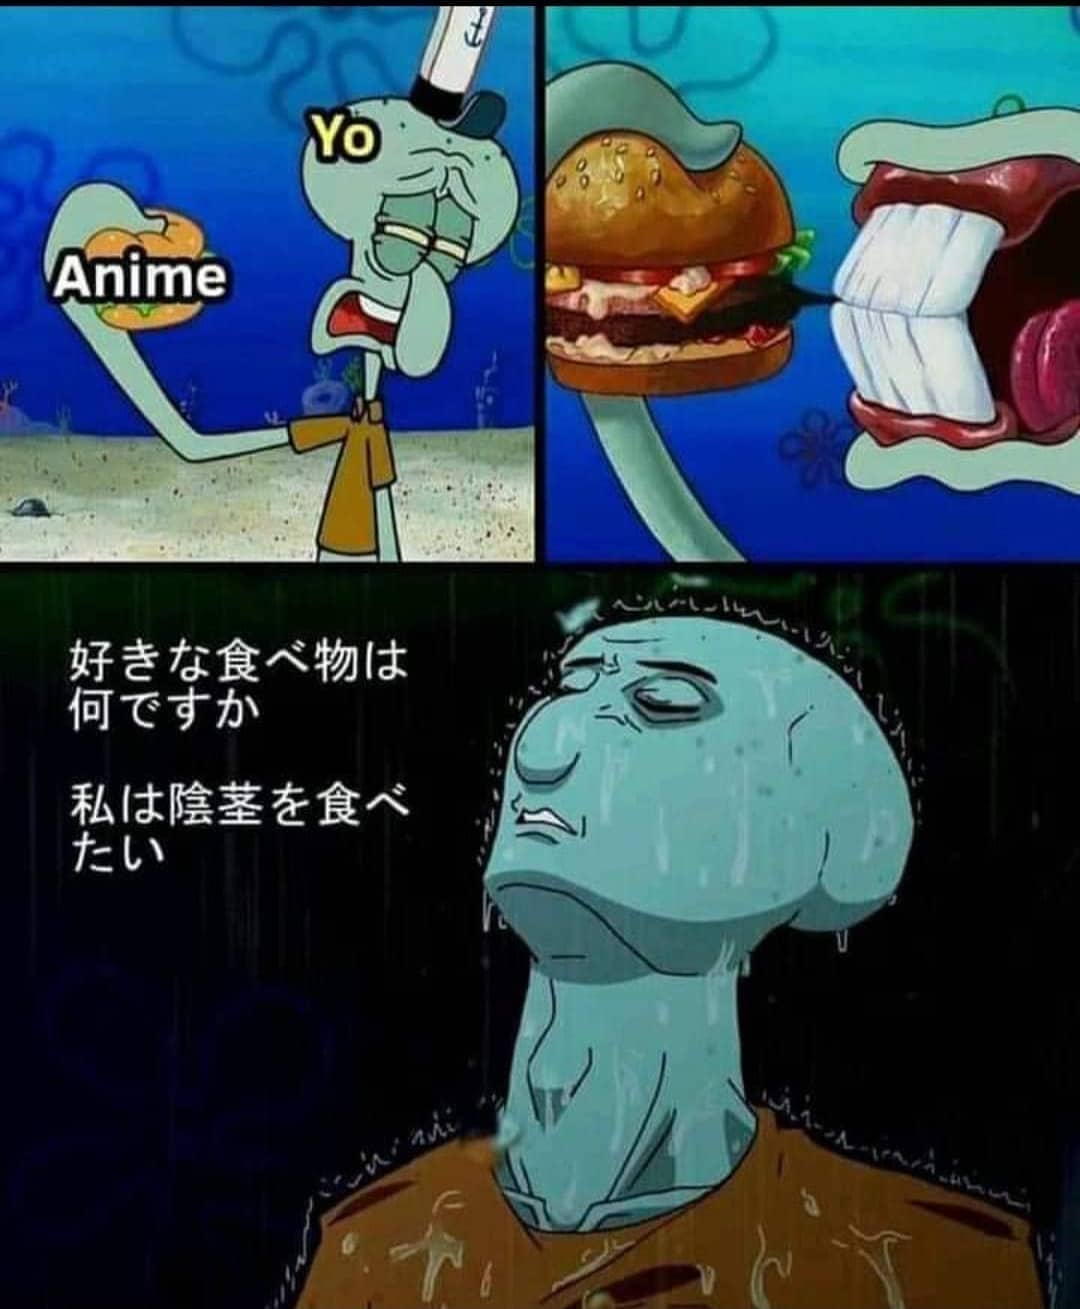 Yo. Anime.